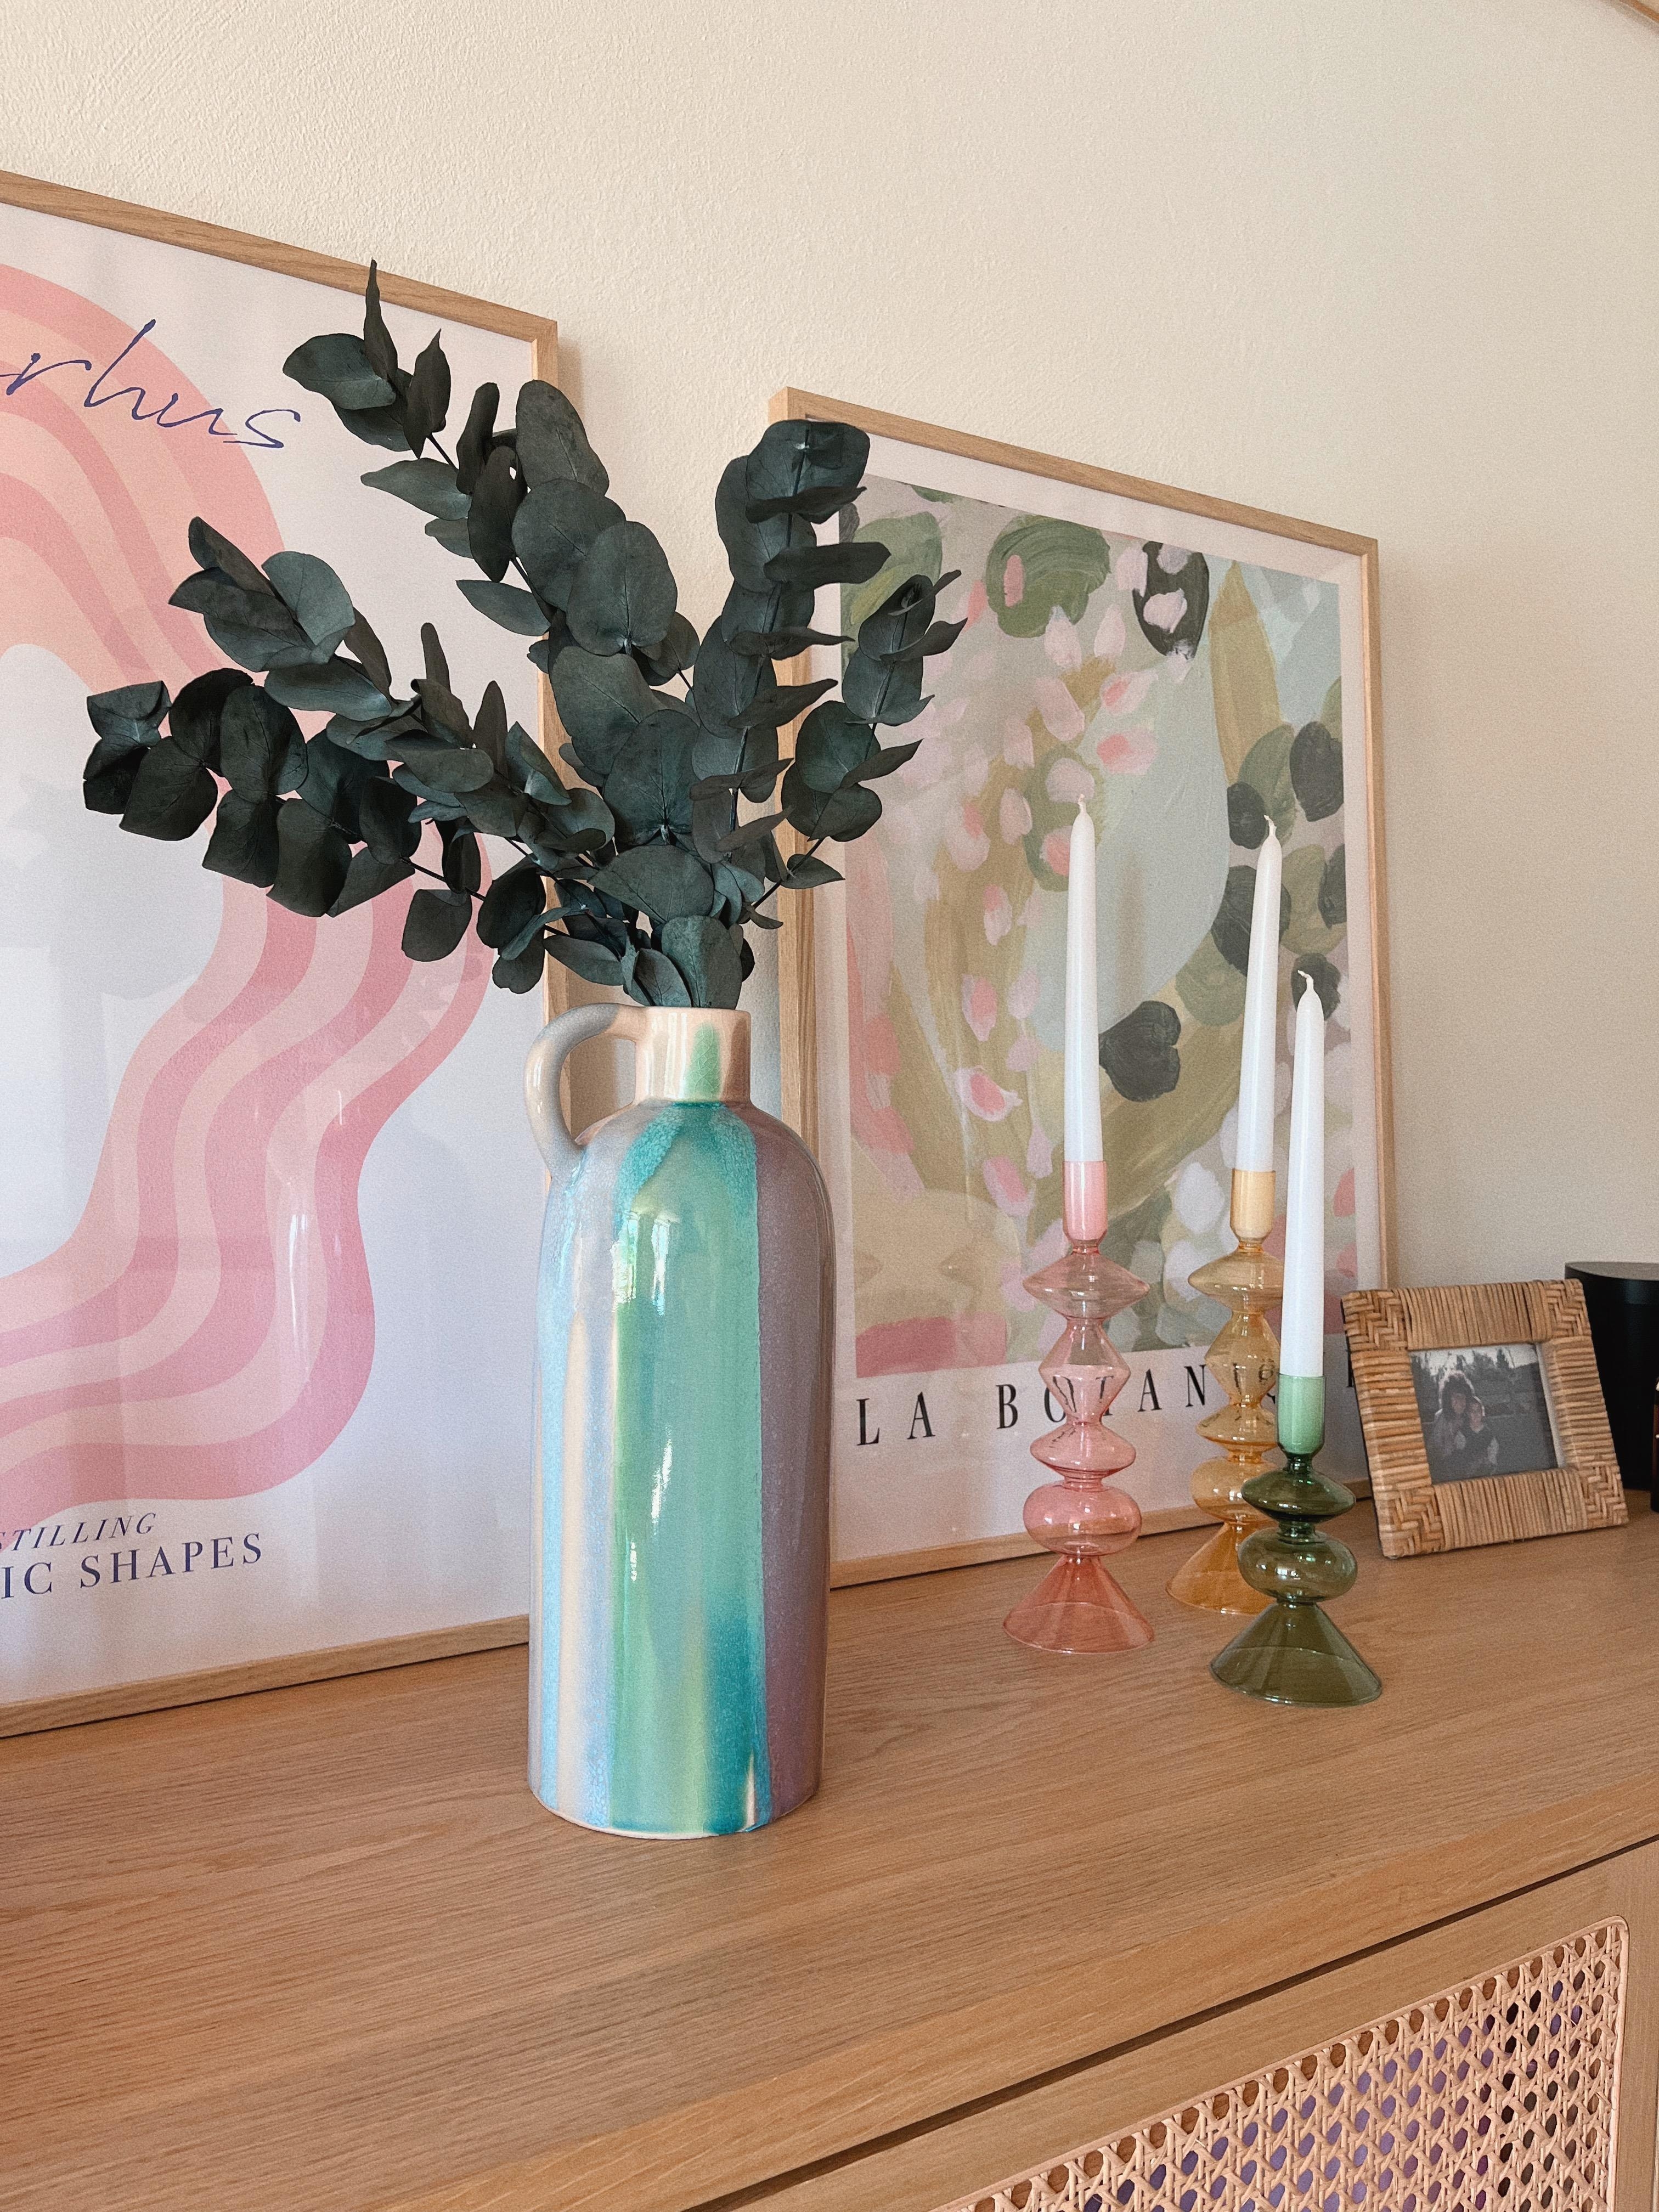 Diese wunderschöne Vase haben wir in der Toskana ergattert. Ein echter Blickfang! Ich liebe diese frischen Farben 💜.
#wohnzimmer #sideboard #bilder #deko